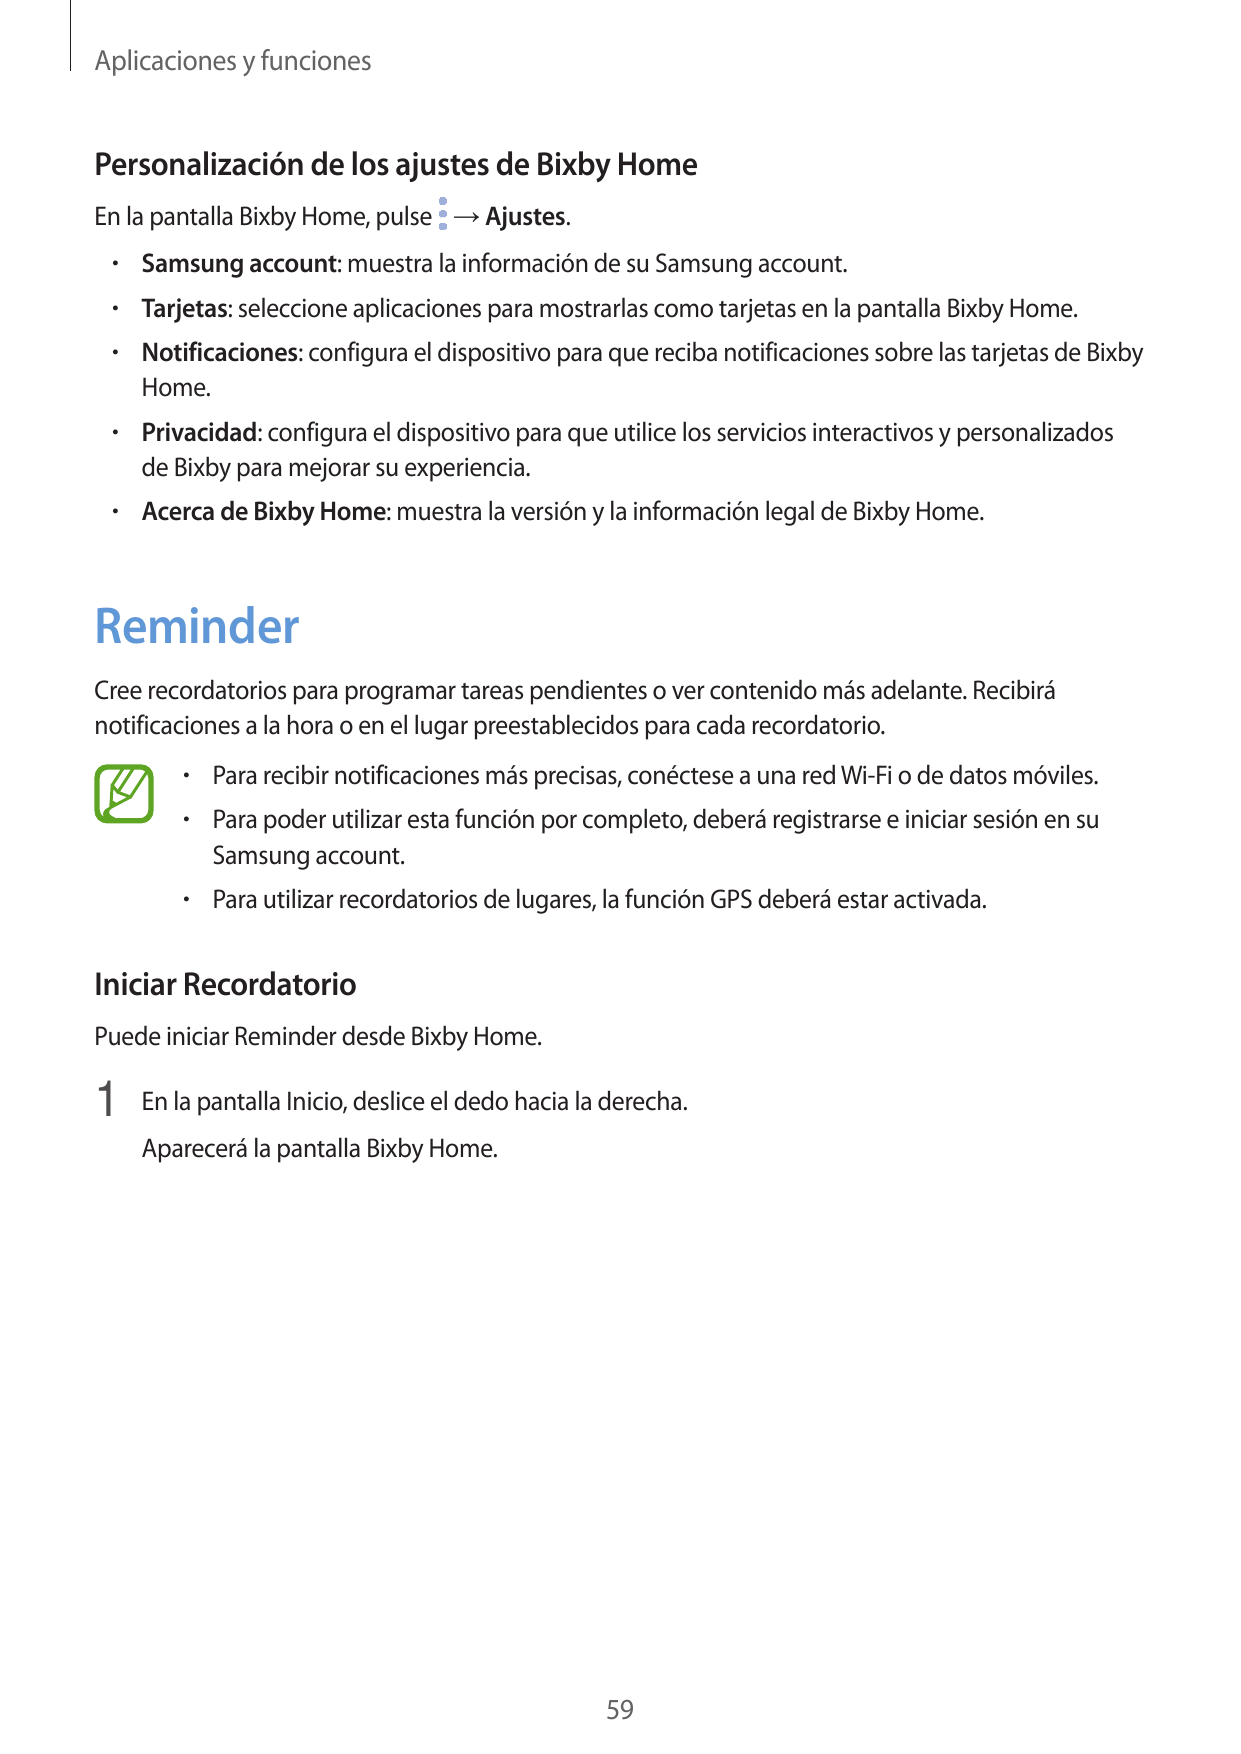 Aplicaciones y funcionesPersonalización de los ajustes de Bixby HomeEn la pantalla Bixby Home, pulse → Ajustes.• Samsung account